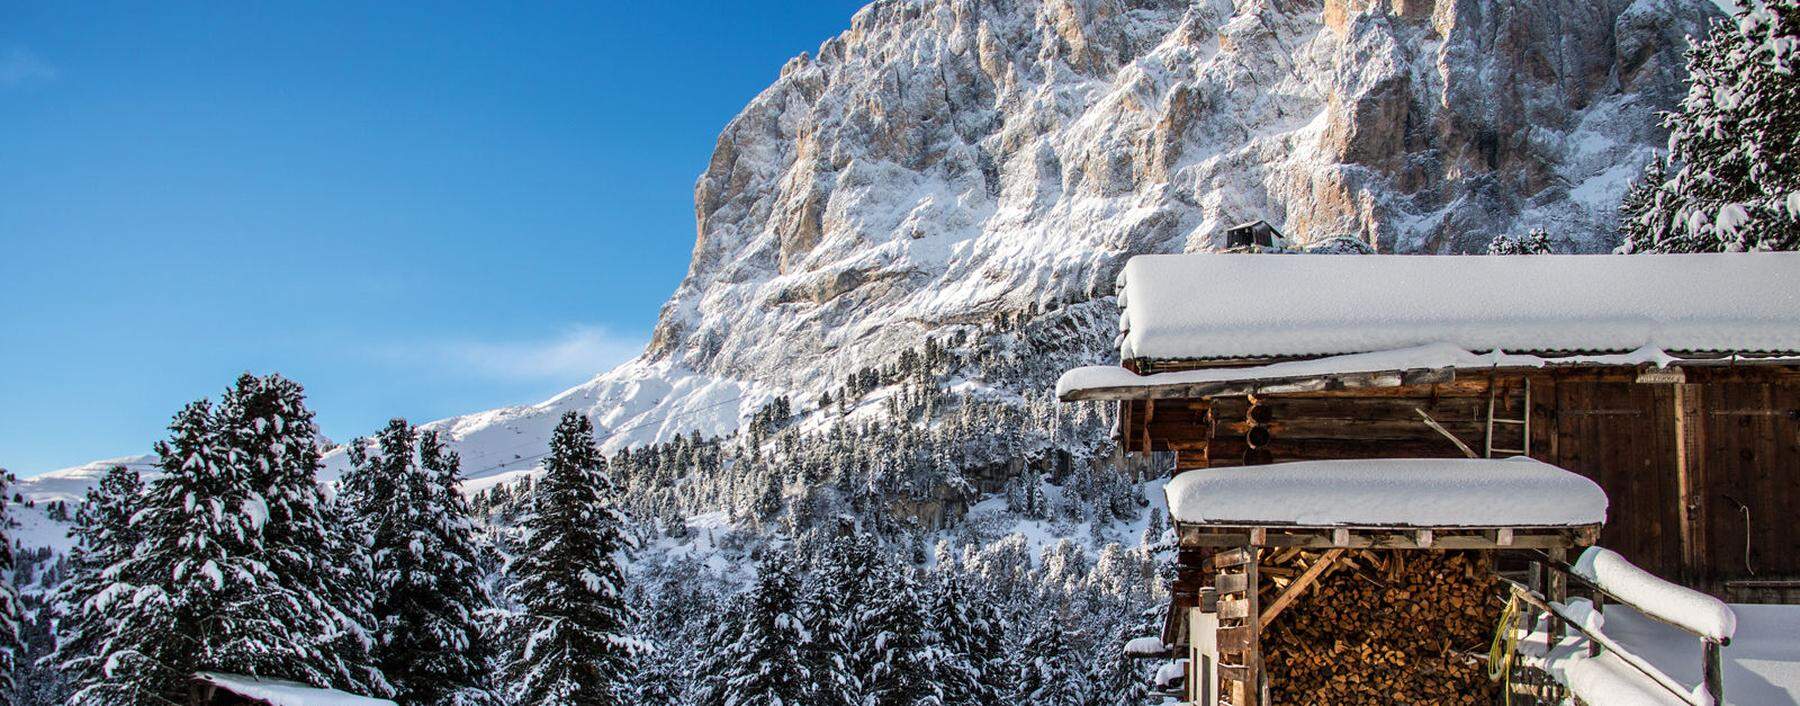 Bergwertung. Die Dolomiten sind seit 2009 Weltnaturerbe der Unesco.